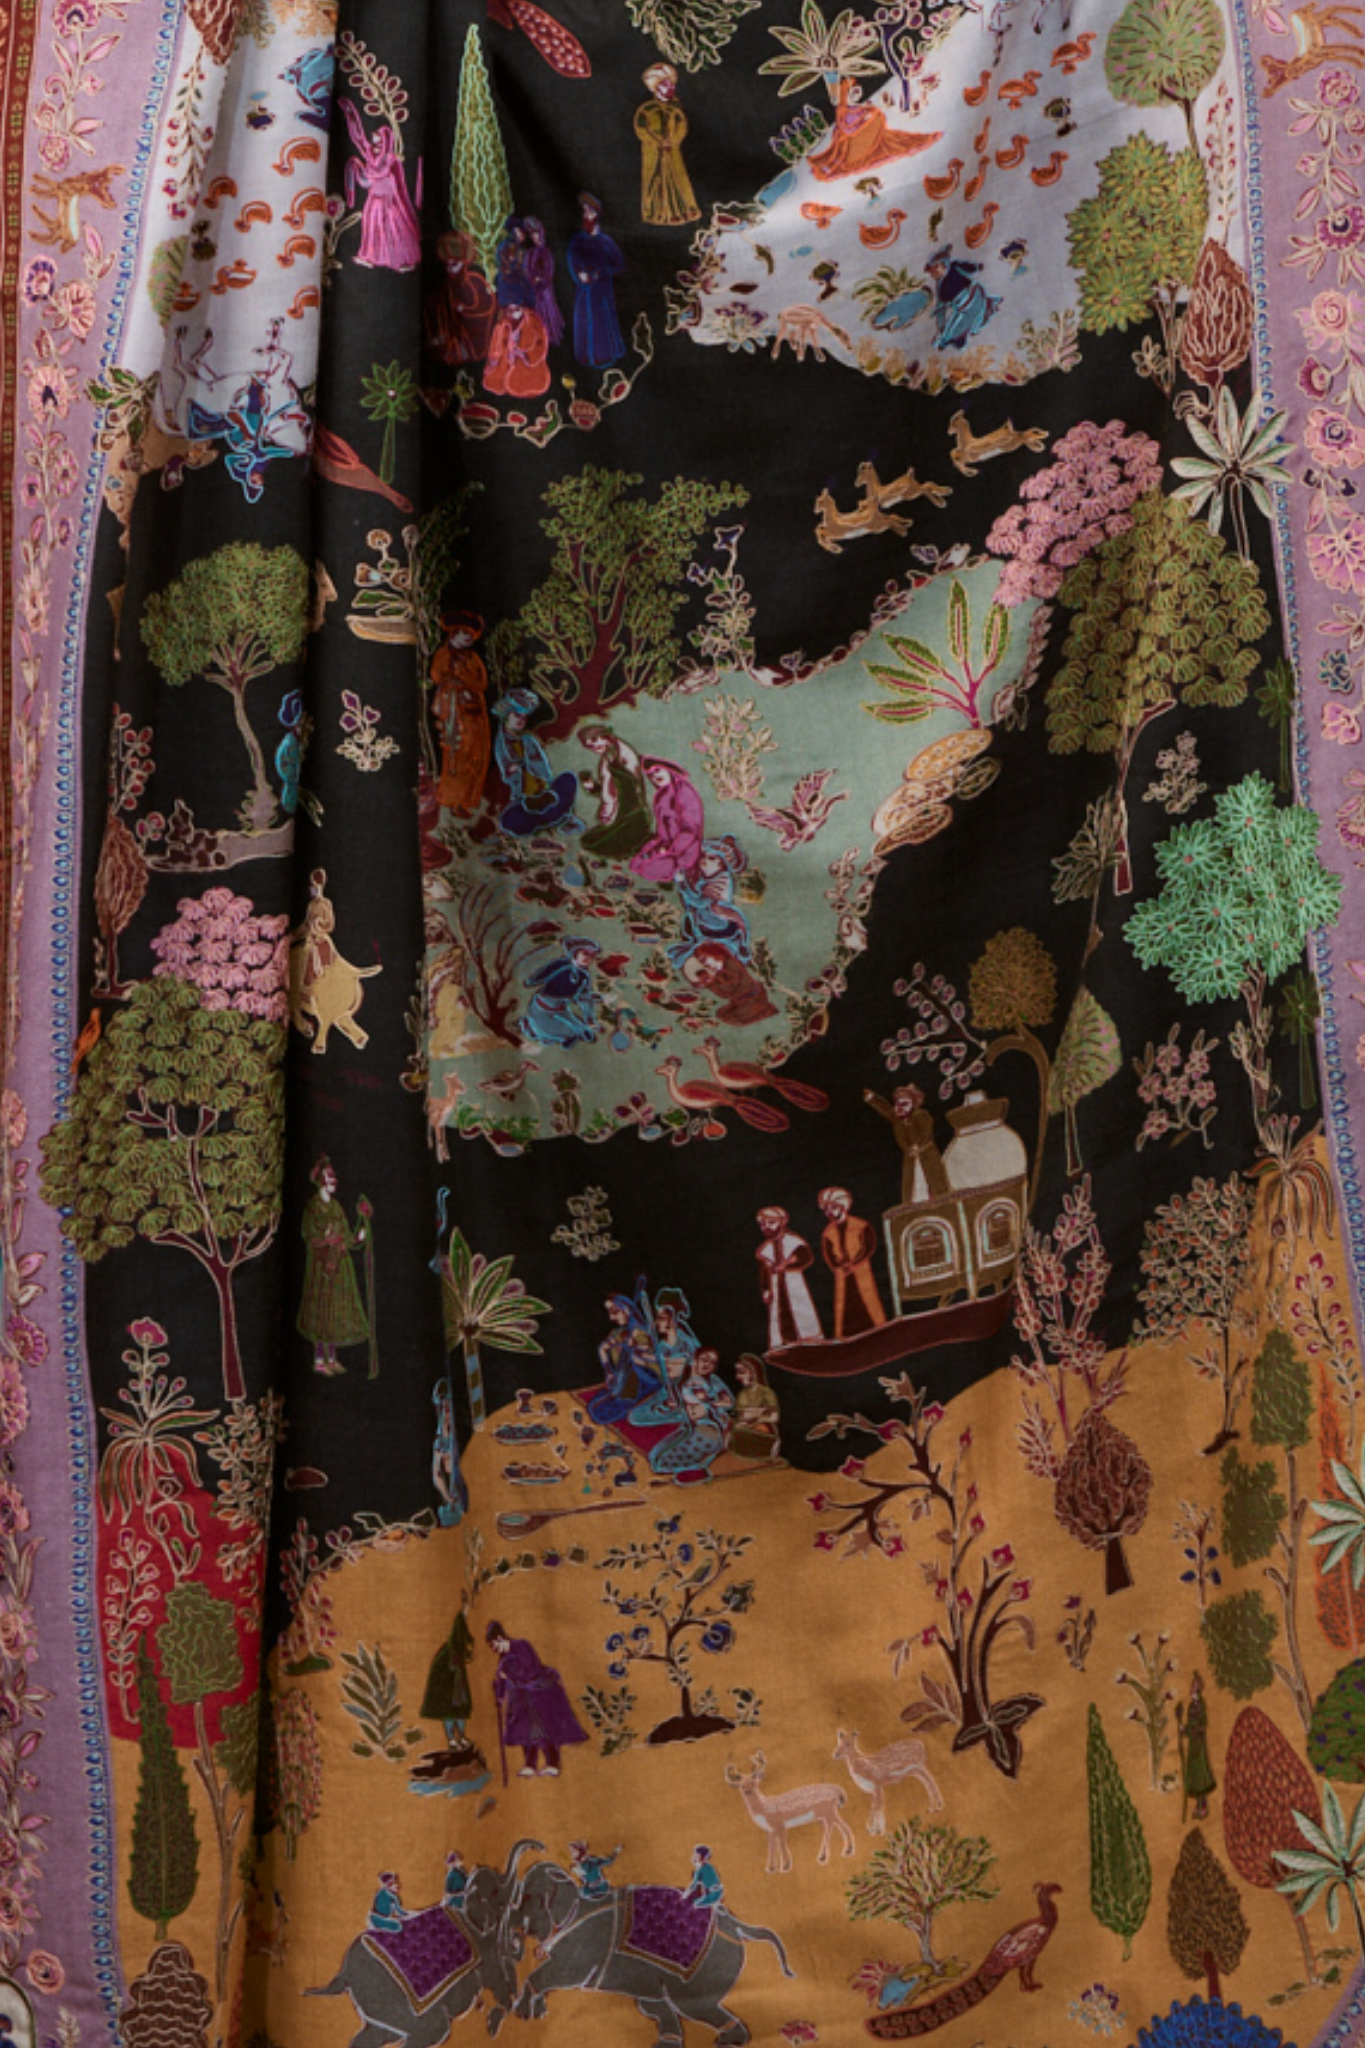 Women's Shikardar Embroiered Kalamkari Embroidered Shawl